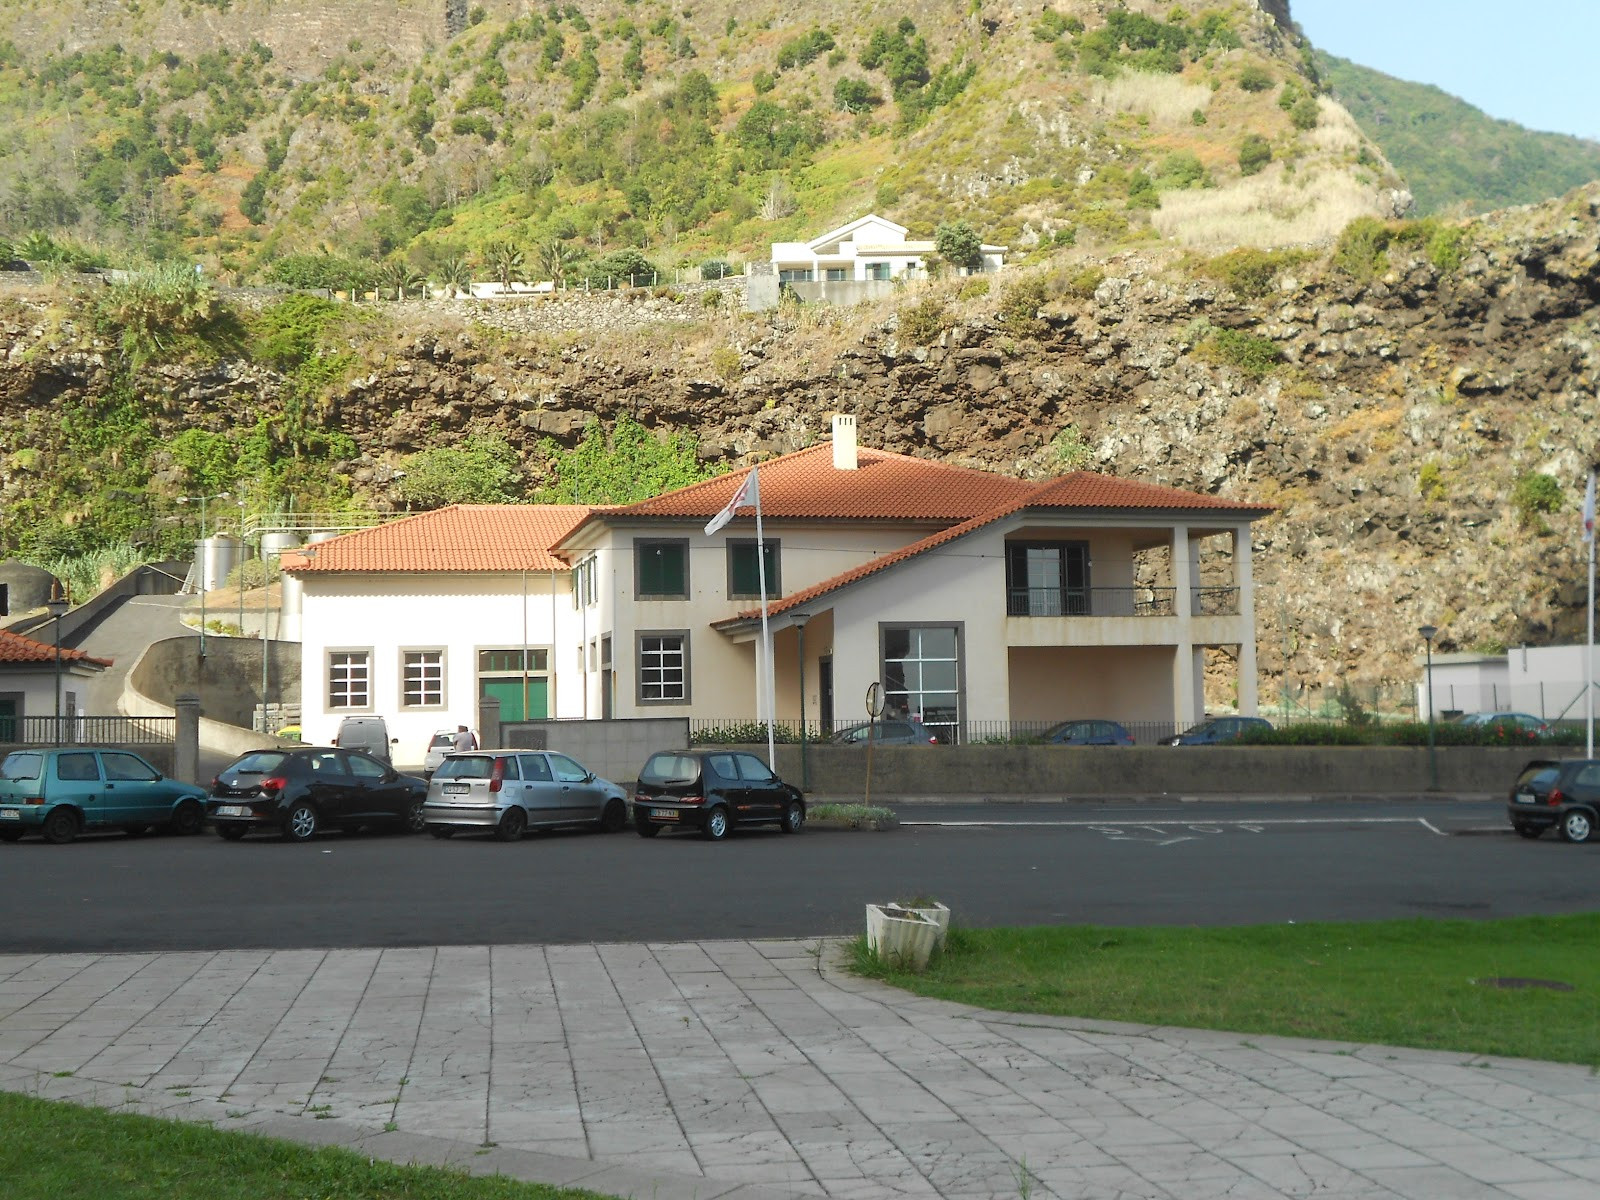 Governo Regional isenta produtores de taxas na Adega de São Vicente.